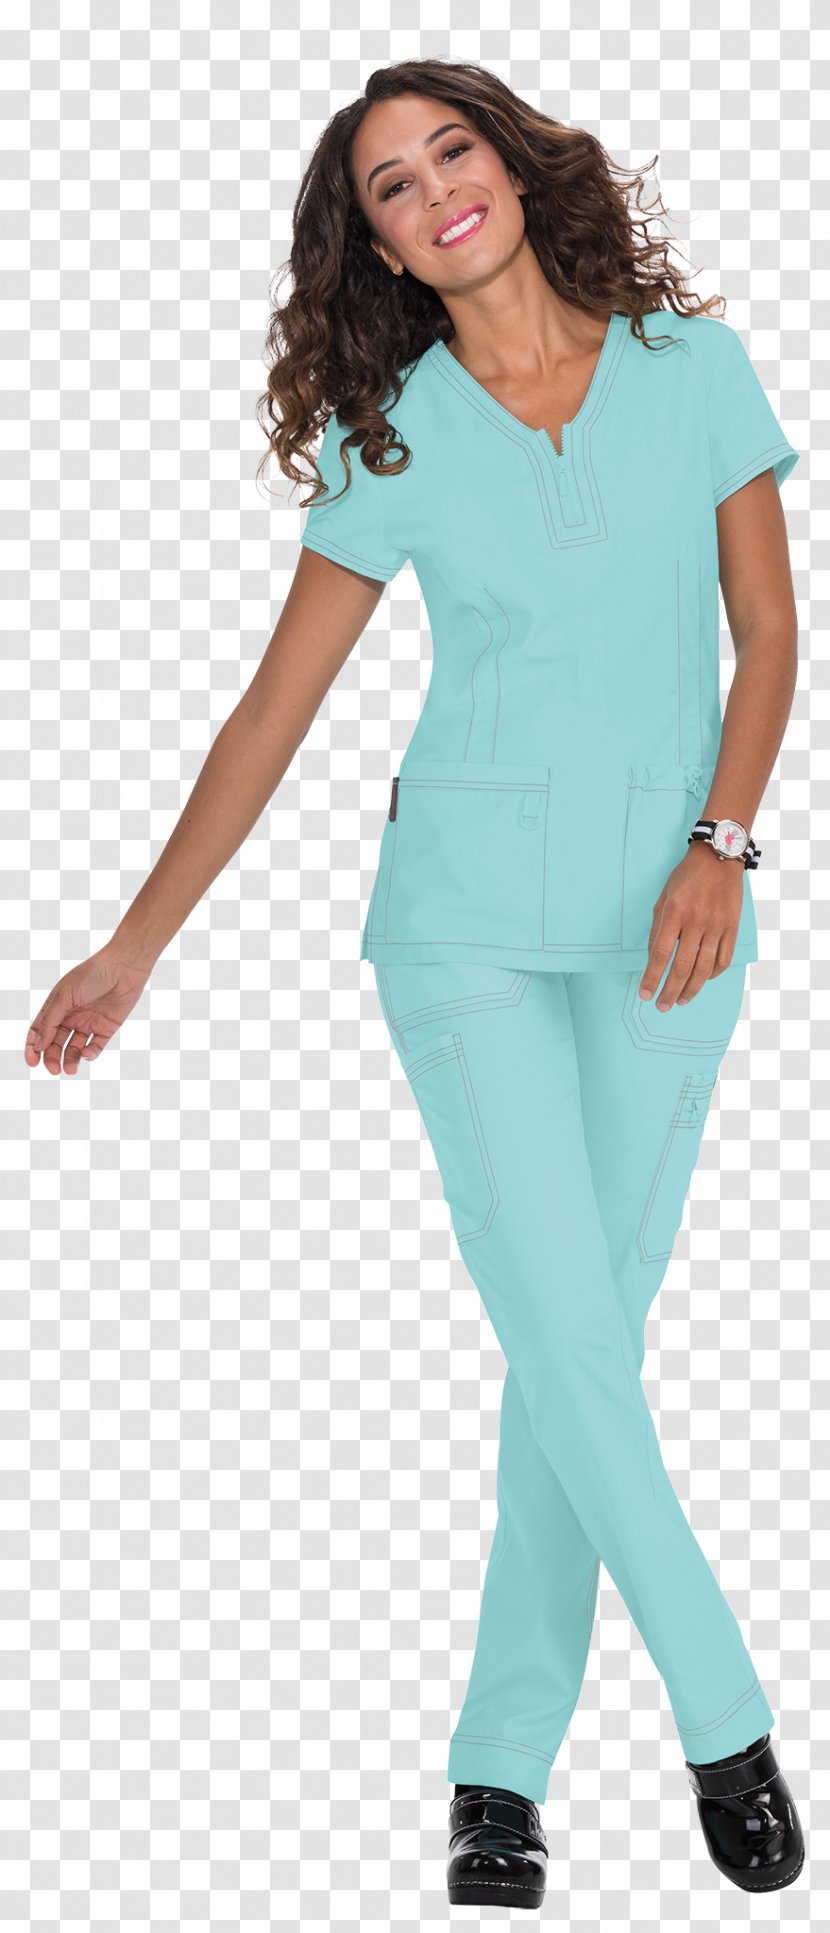 Clothing Electric Blue Turquoise Pants - Arm - Uniform Transparent PNG